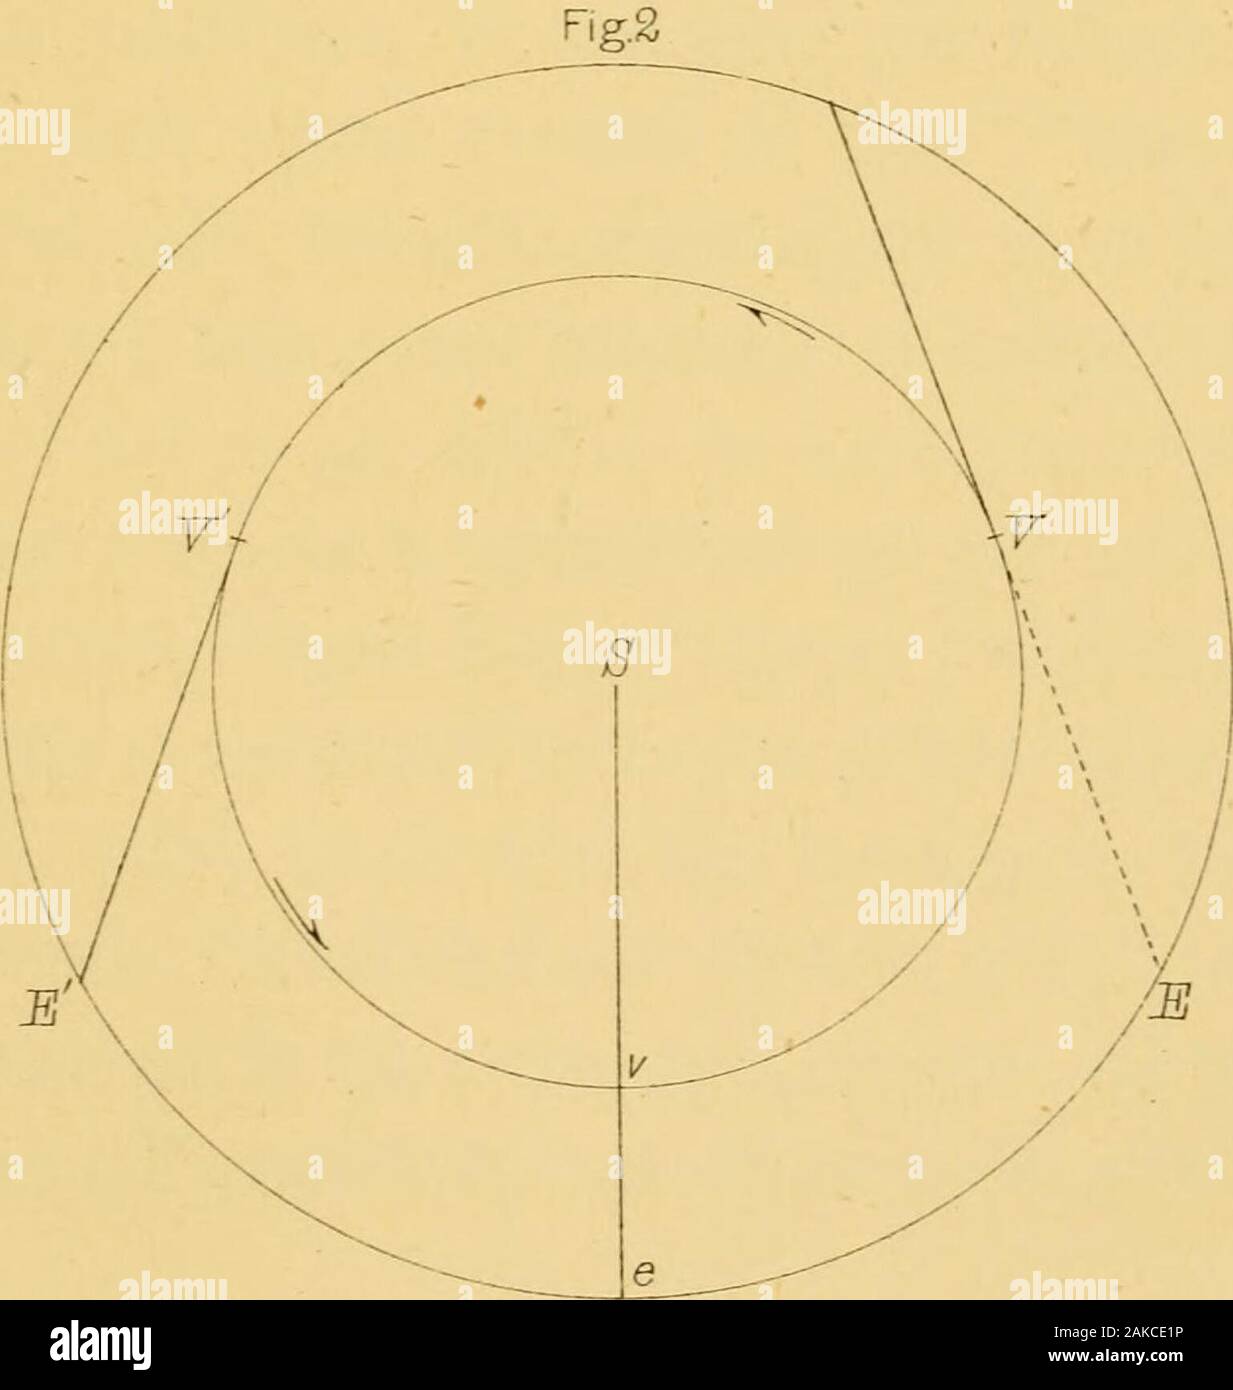 Il siderale messaggero di Galileo Galilei : e una parte della prefazione di Kepler Dioptrice contenente l'account originale delle scoperte astronomiche di Galileo . ^ JS la terra (al centro dell'universo). S Sole 0 centro di eccentrico. D center erfPlanets epiciclo. Punti YYstationary. S v vprojections di SYYon l' eclittica di cui^ è il centro.. S il sole, al centro del sistema solare, v e le posizioni del pianeta e la messa a terra a congiunzione.VV^punti stazionari del pianeta, ^^corrispondenti posizioni della terra. KEPLERS continuazione. 97 veder col sen in modo stesso quello di morire non rintelletto dubitavapunto. Foto Stock